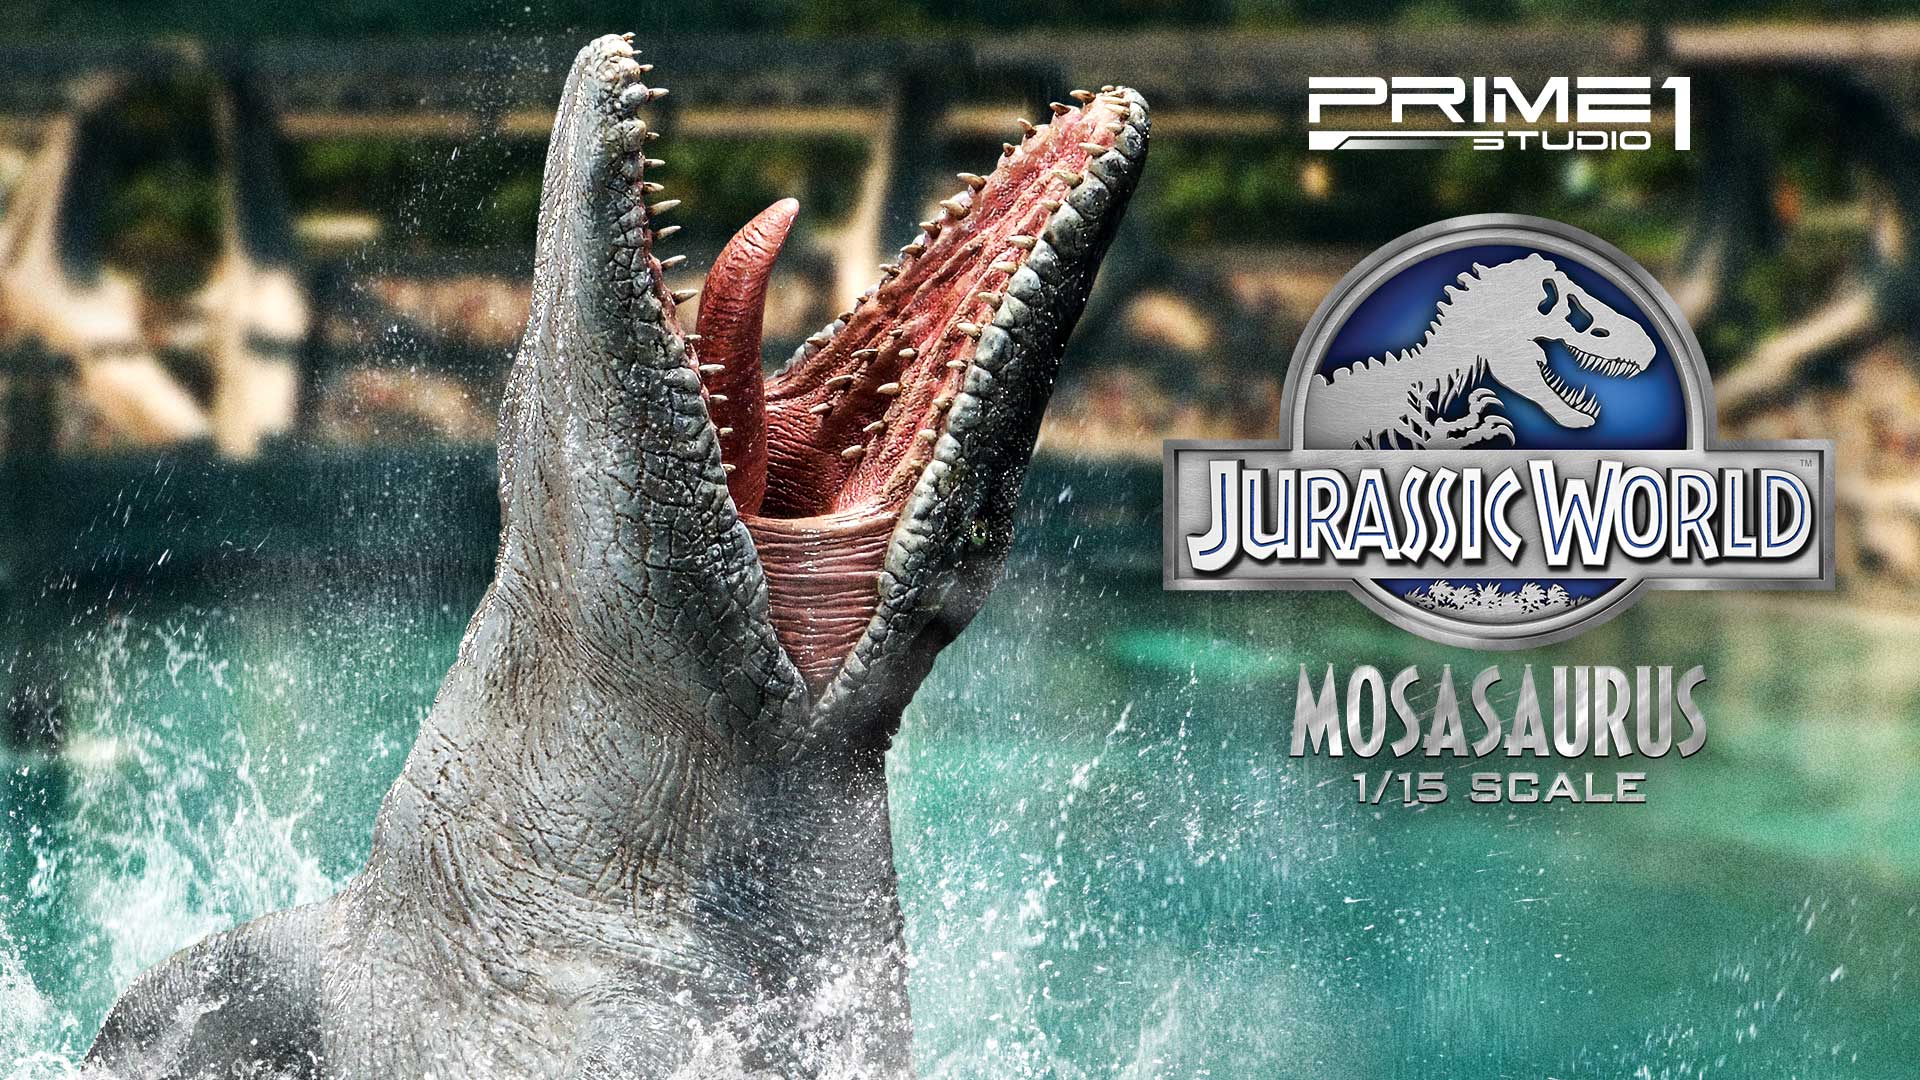 ジュラシック ワールドで絶大な存在感を放った人気恐竜 モササウルス が横幅 90cmオーバー の迫力サイズで登場 インディー